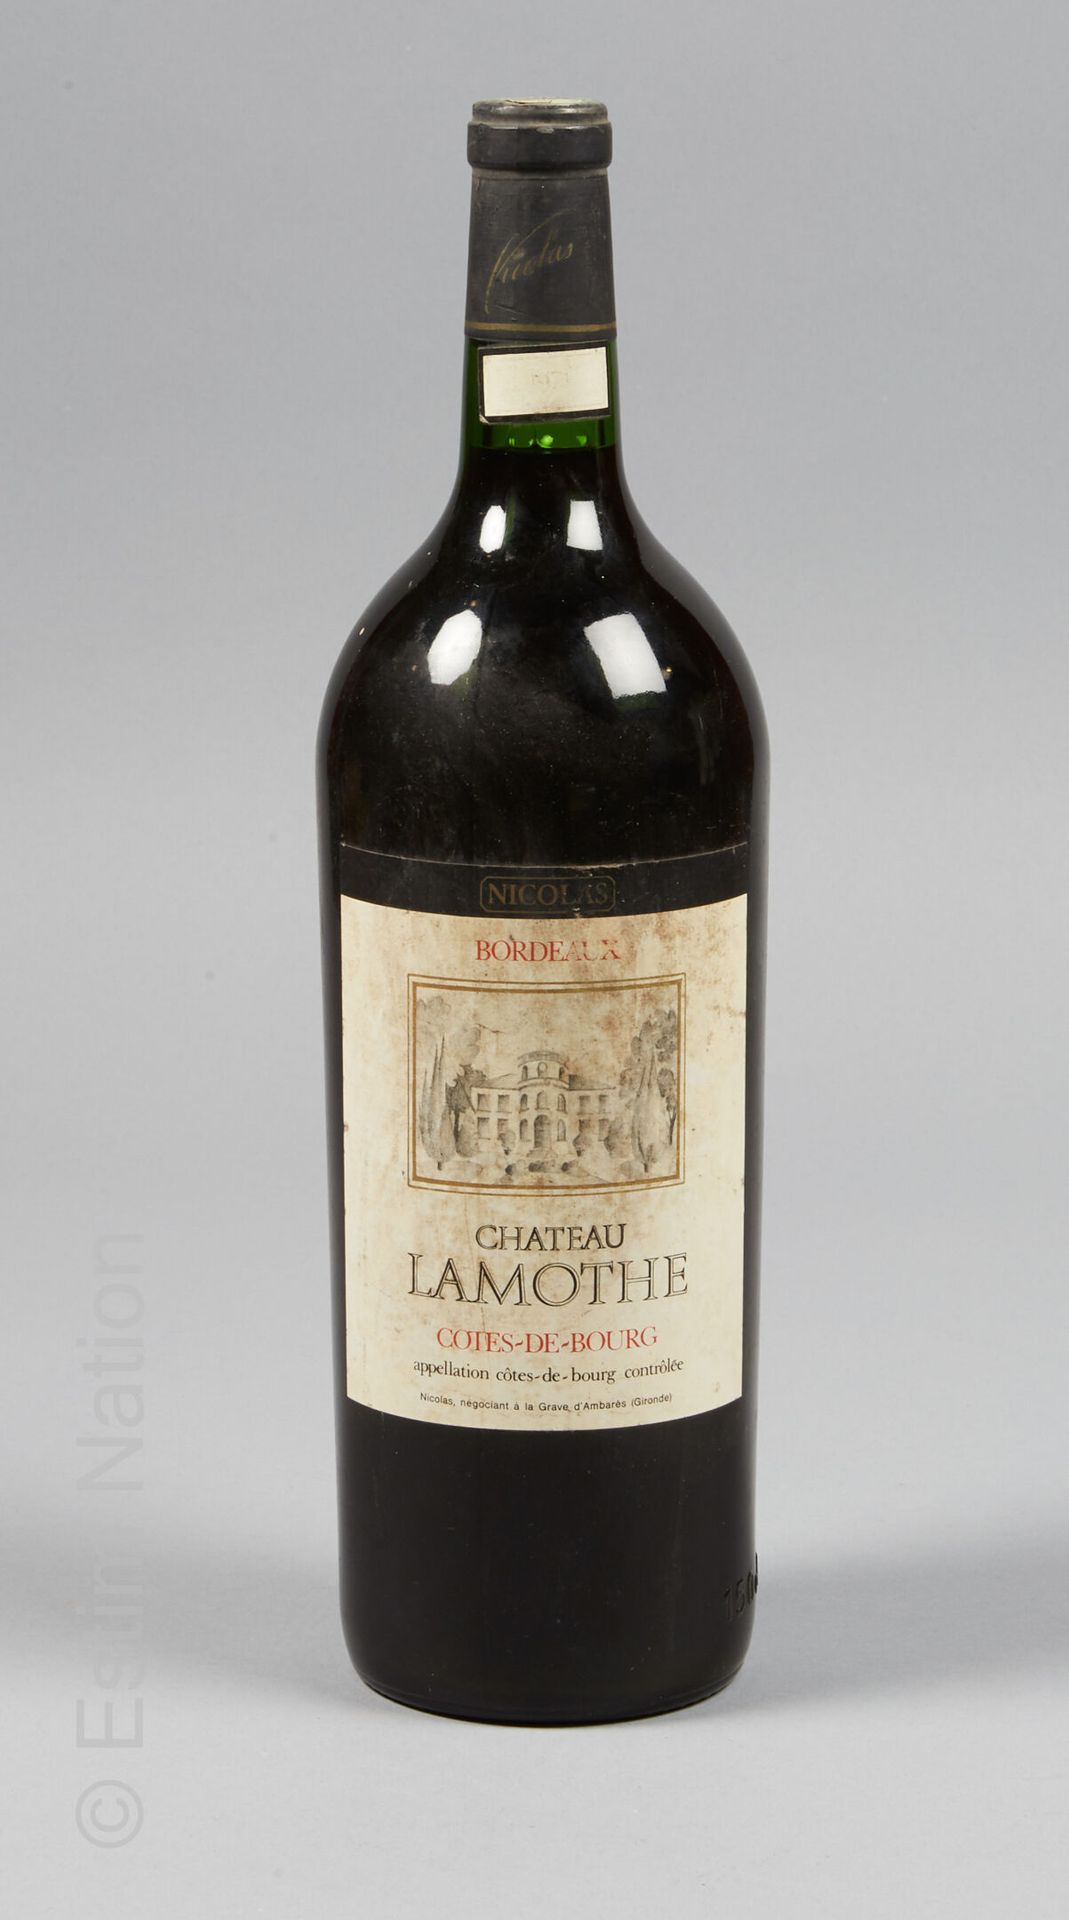 MAGNUM LAMOTHE 拉莫特酒庄，1971年

称呼Côtes-de-Bourg contrôlée

(标签上的污渍)